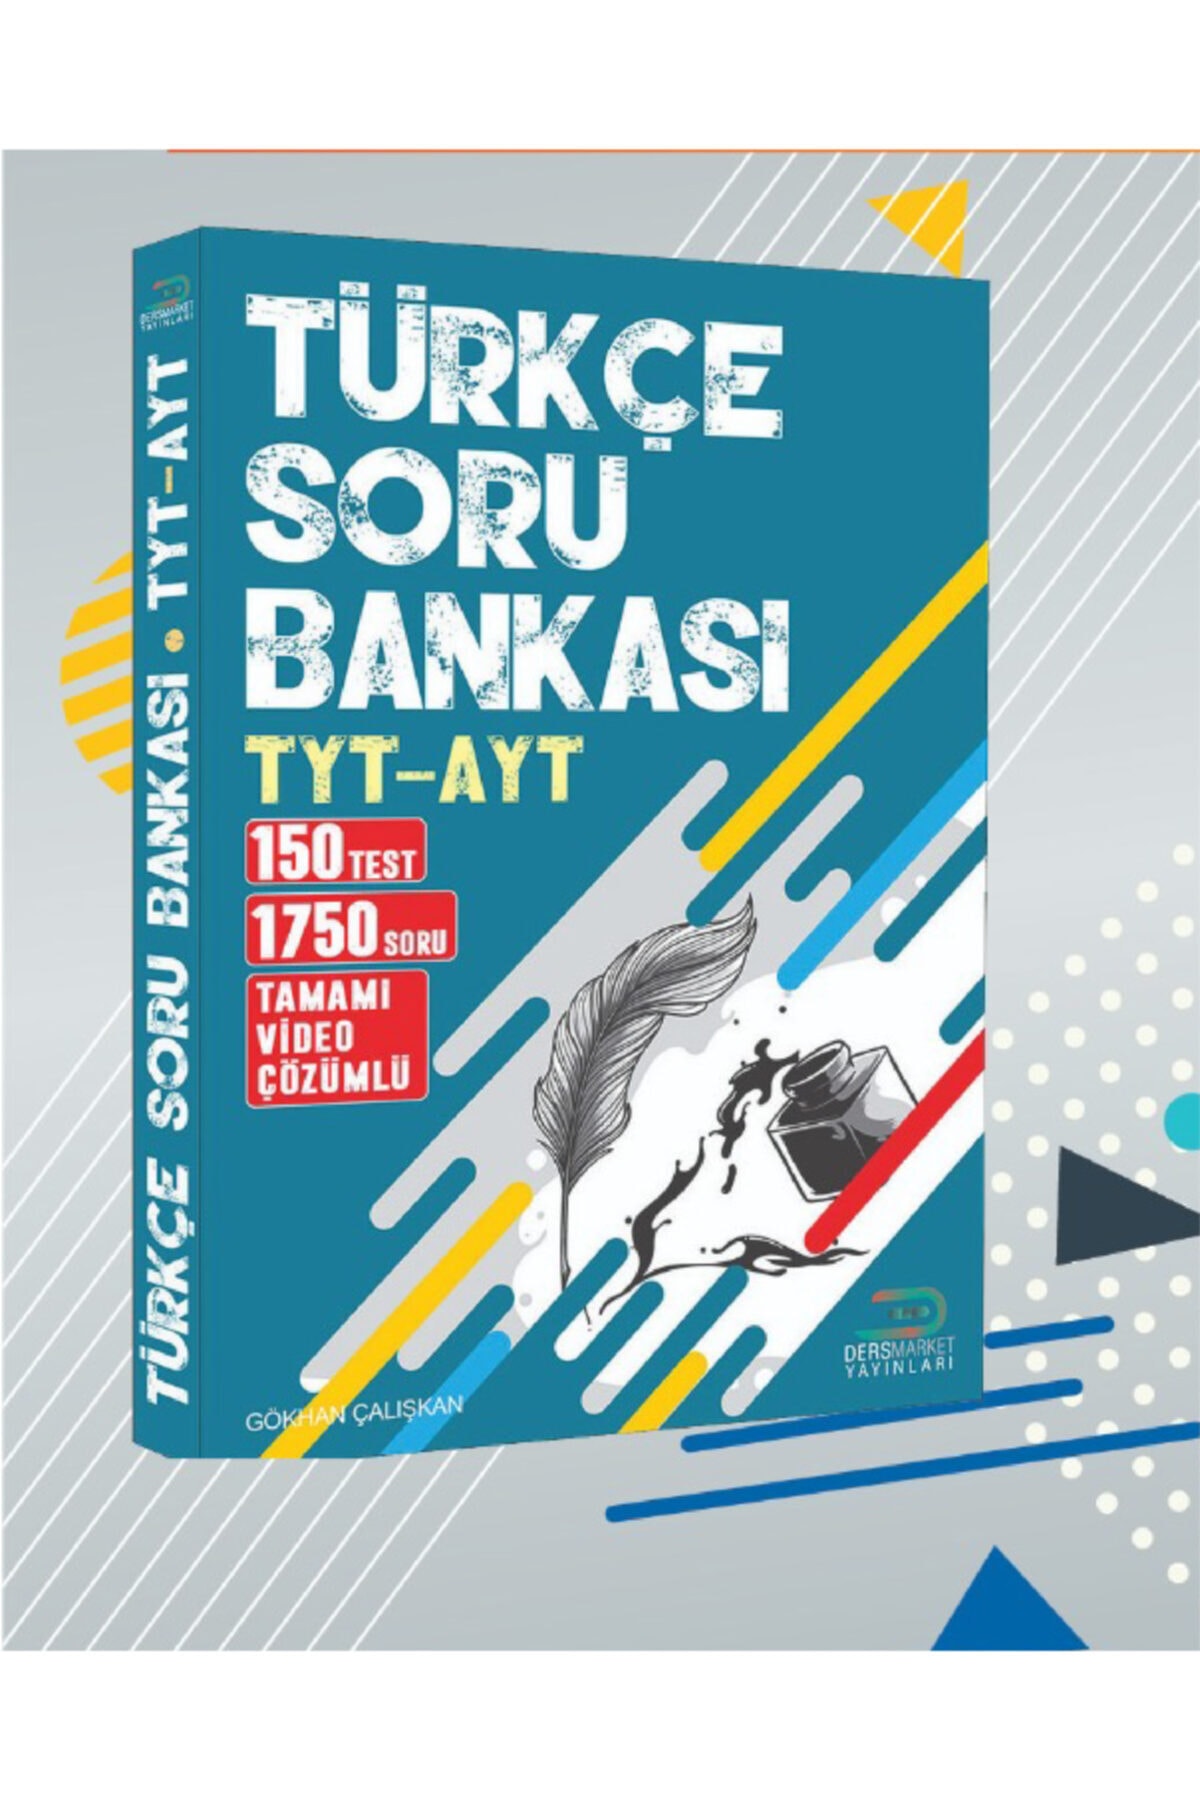 Ders Market Yayınları Tyt-Ayt Türkçe Soru Bankası